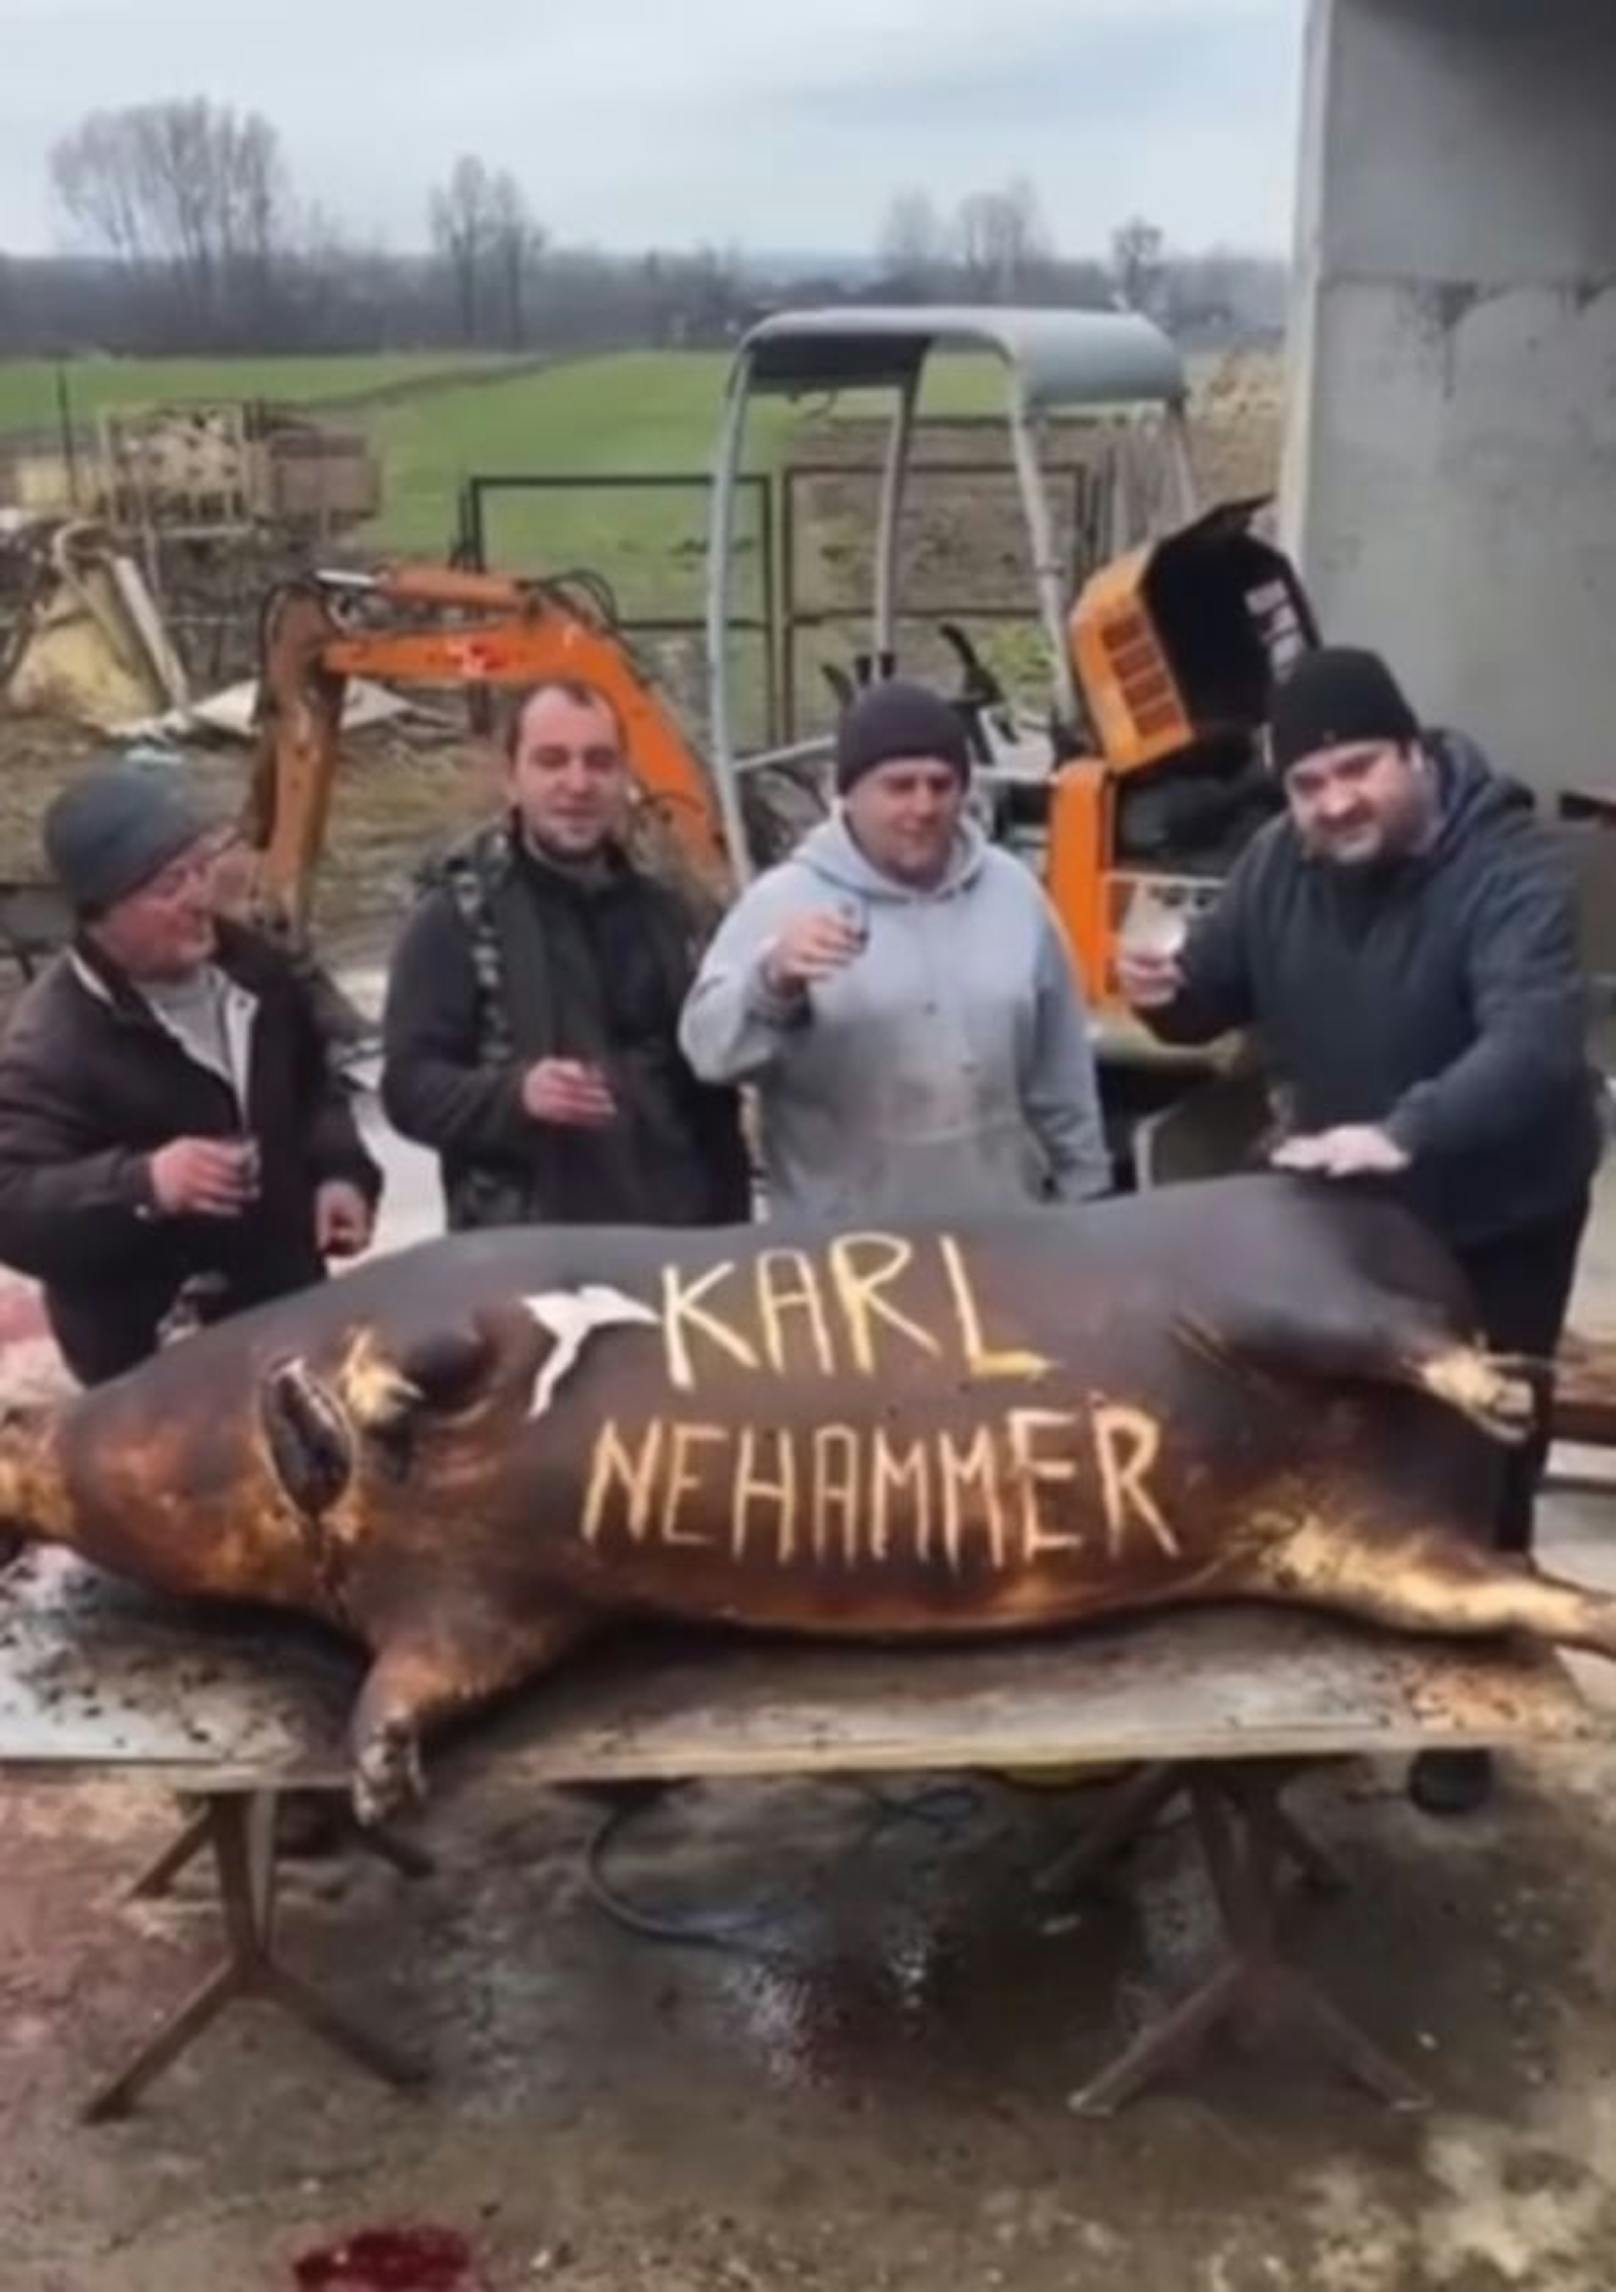 Darauf sind vier Männer zu sehen, die einem verkohlten Schwein "Karl Nehammer" in den Bauchspeck geritzt haben.